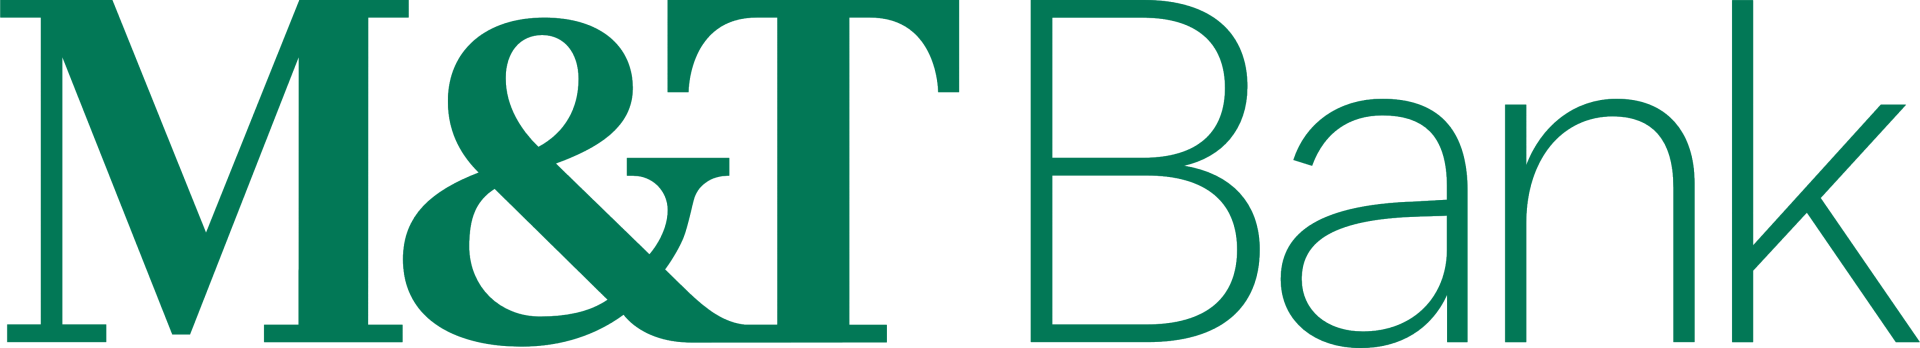 MT_Bank_logo_logotype